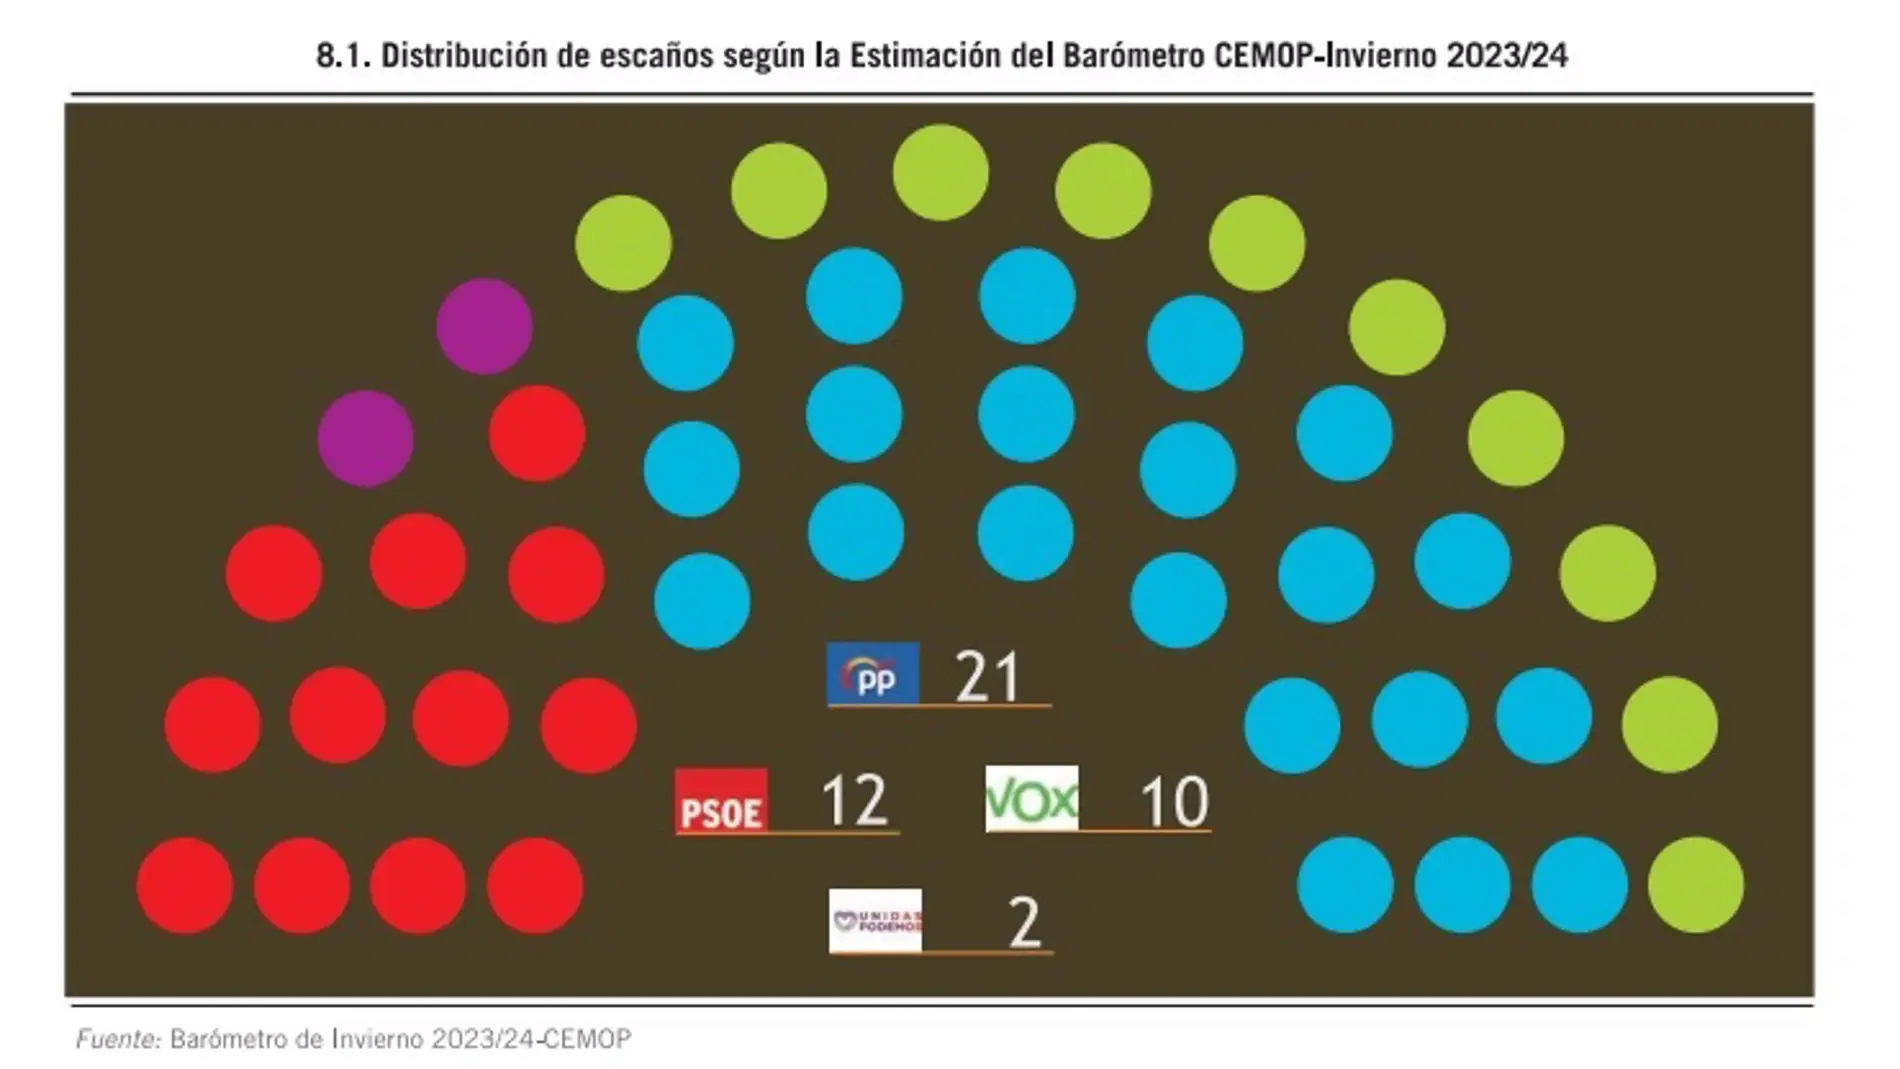 El PP ganaría las elecciones y VOX obtendría su décimo diputado a costa del PSOE si hubiera hoy elecciones